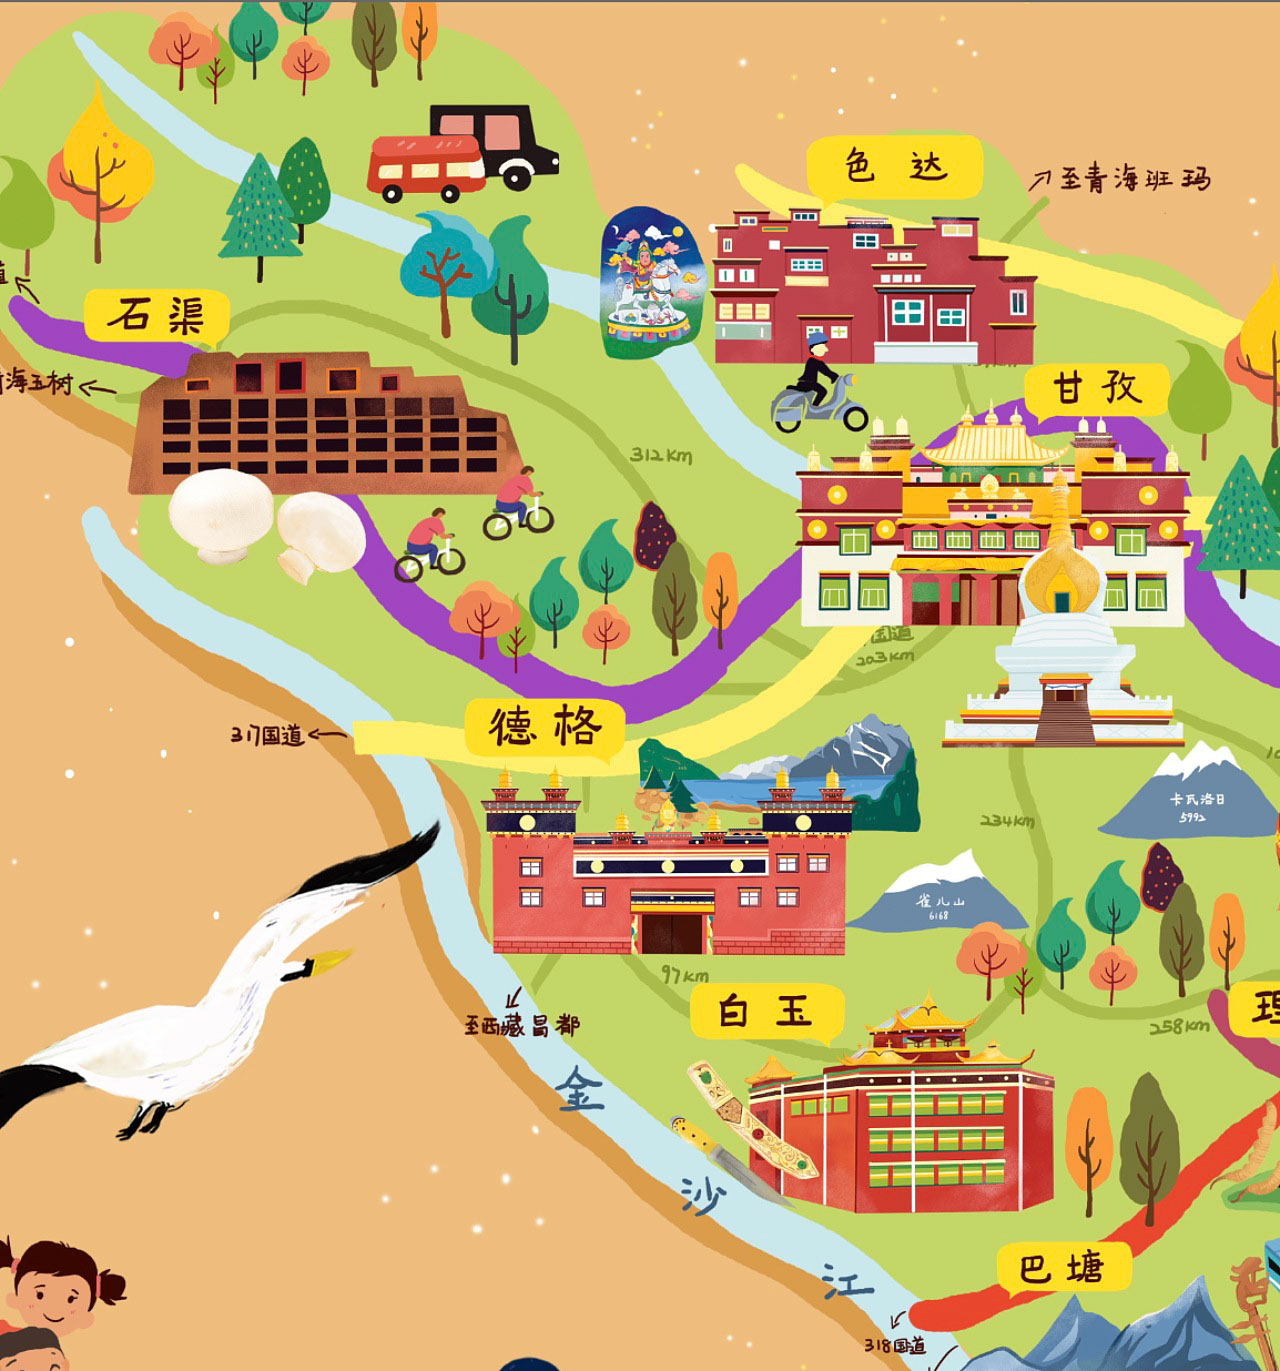 熊口镇手绘地图景区的文化宝库